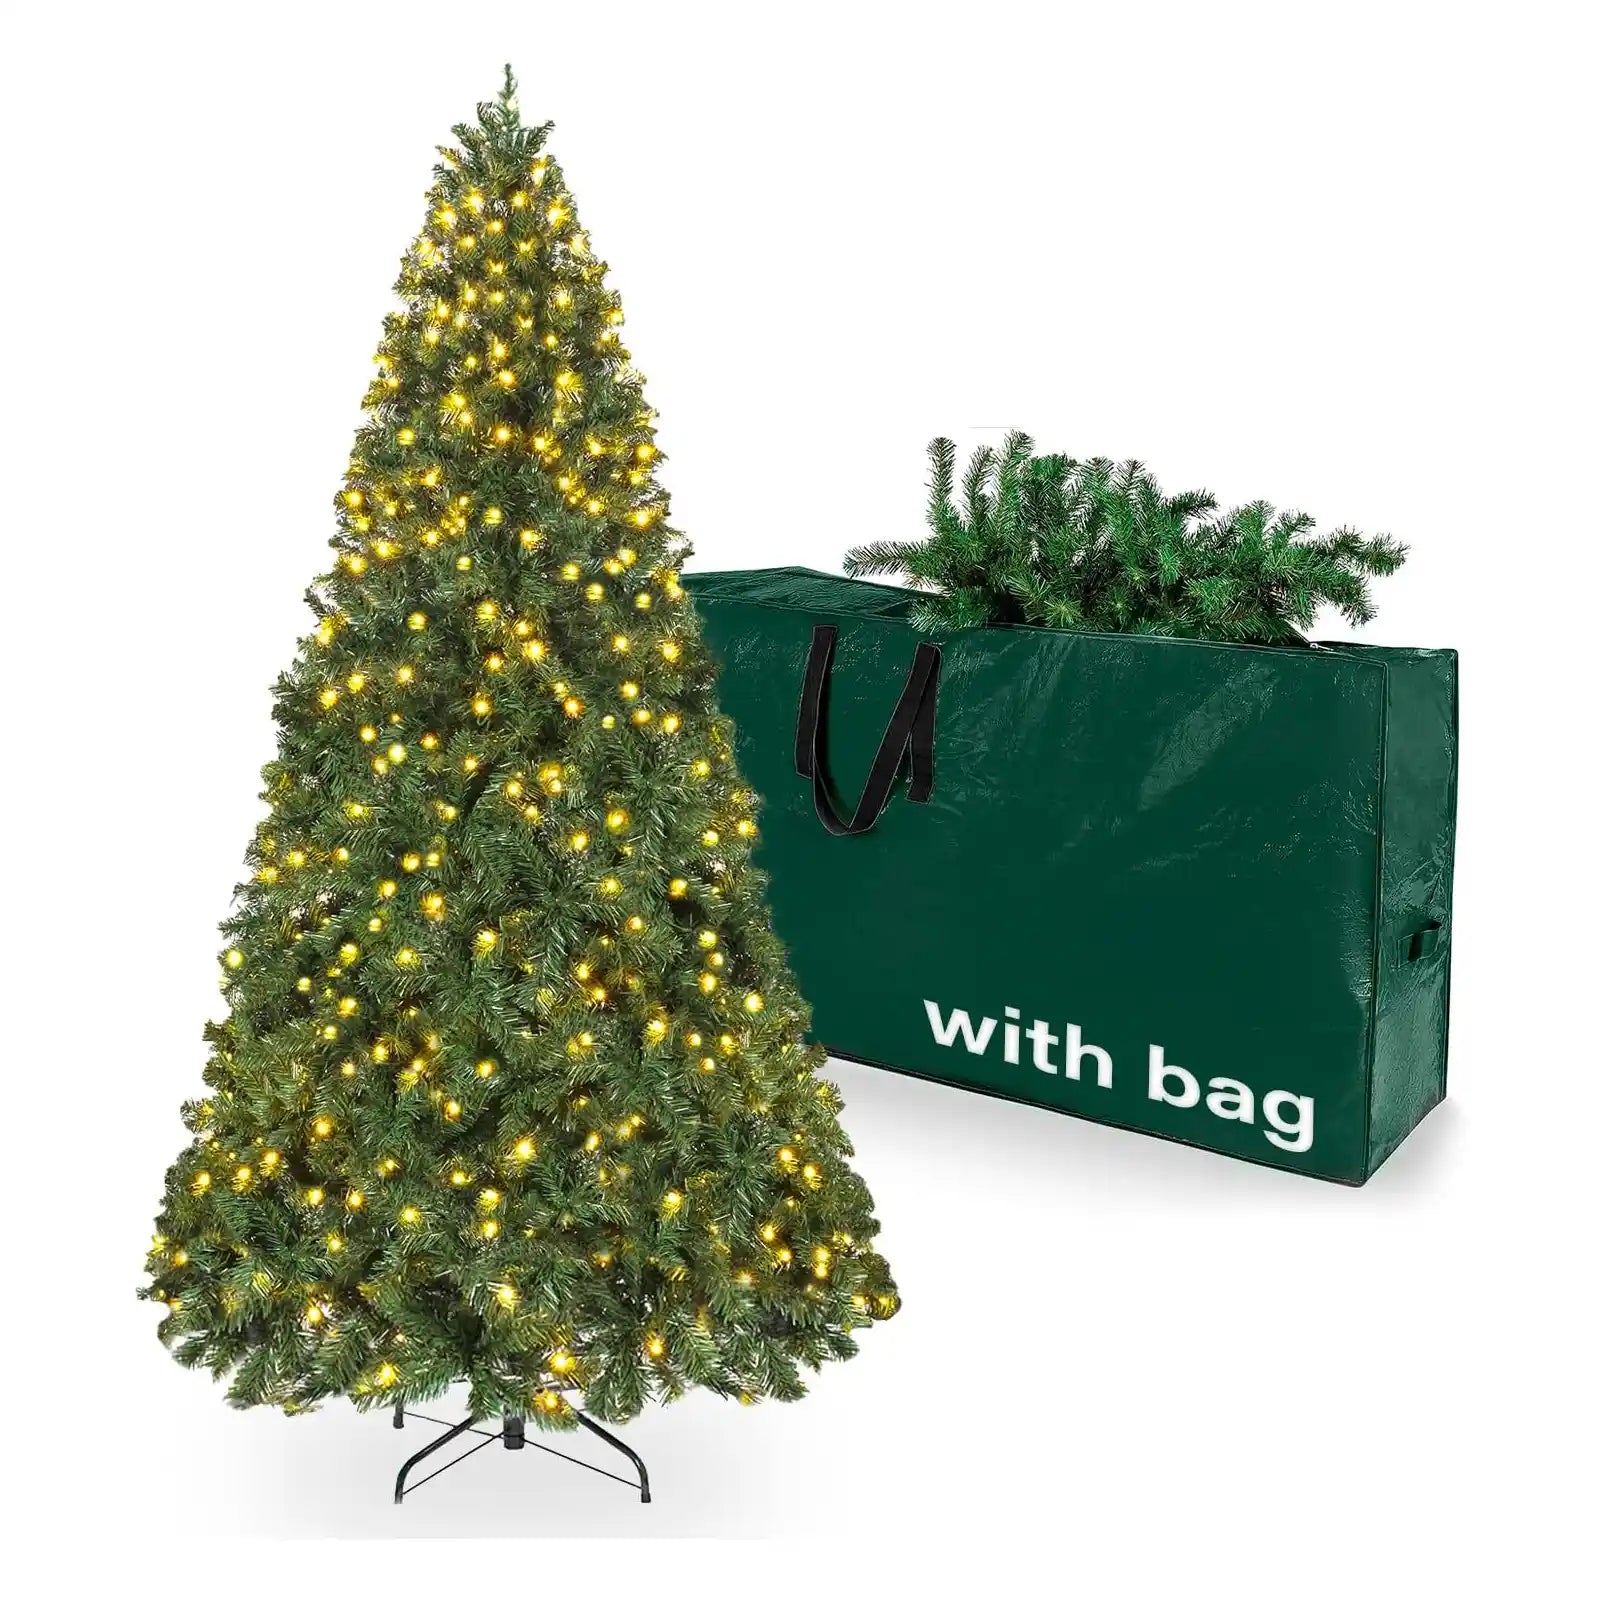 Árbol de Navidad preiluminado de 7.5 pies, árbol de Navidad artificial de abeto con luces blancas cálidas, árbol de Navidad con bolsa de almacenamiento y soporte de metal para decoración navideña interior y exterior 